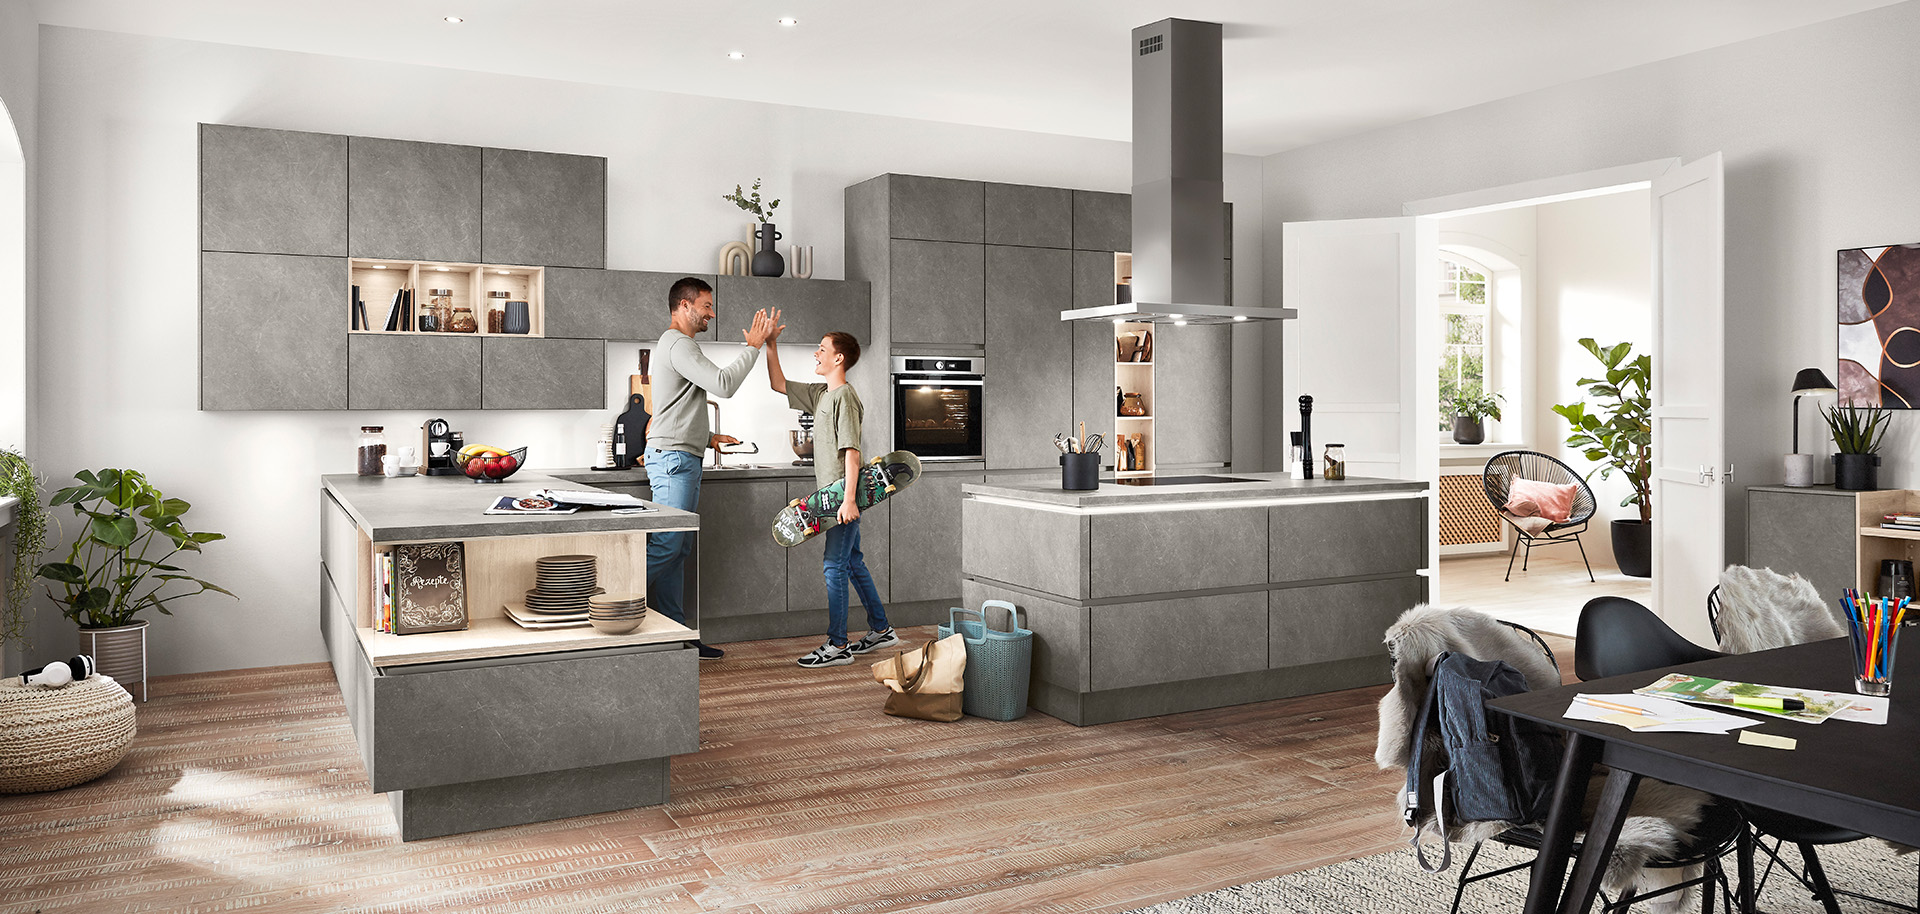 Moderní, prostorná kuchyně s pár, který se veselí ve společné konverzaci, obklopená elegantními šedými skříňkami a dekorem pod přirozeným osvětlením.